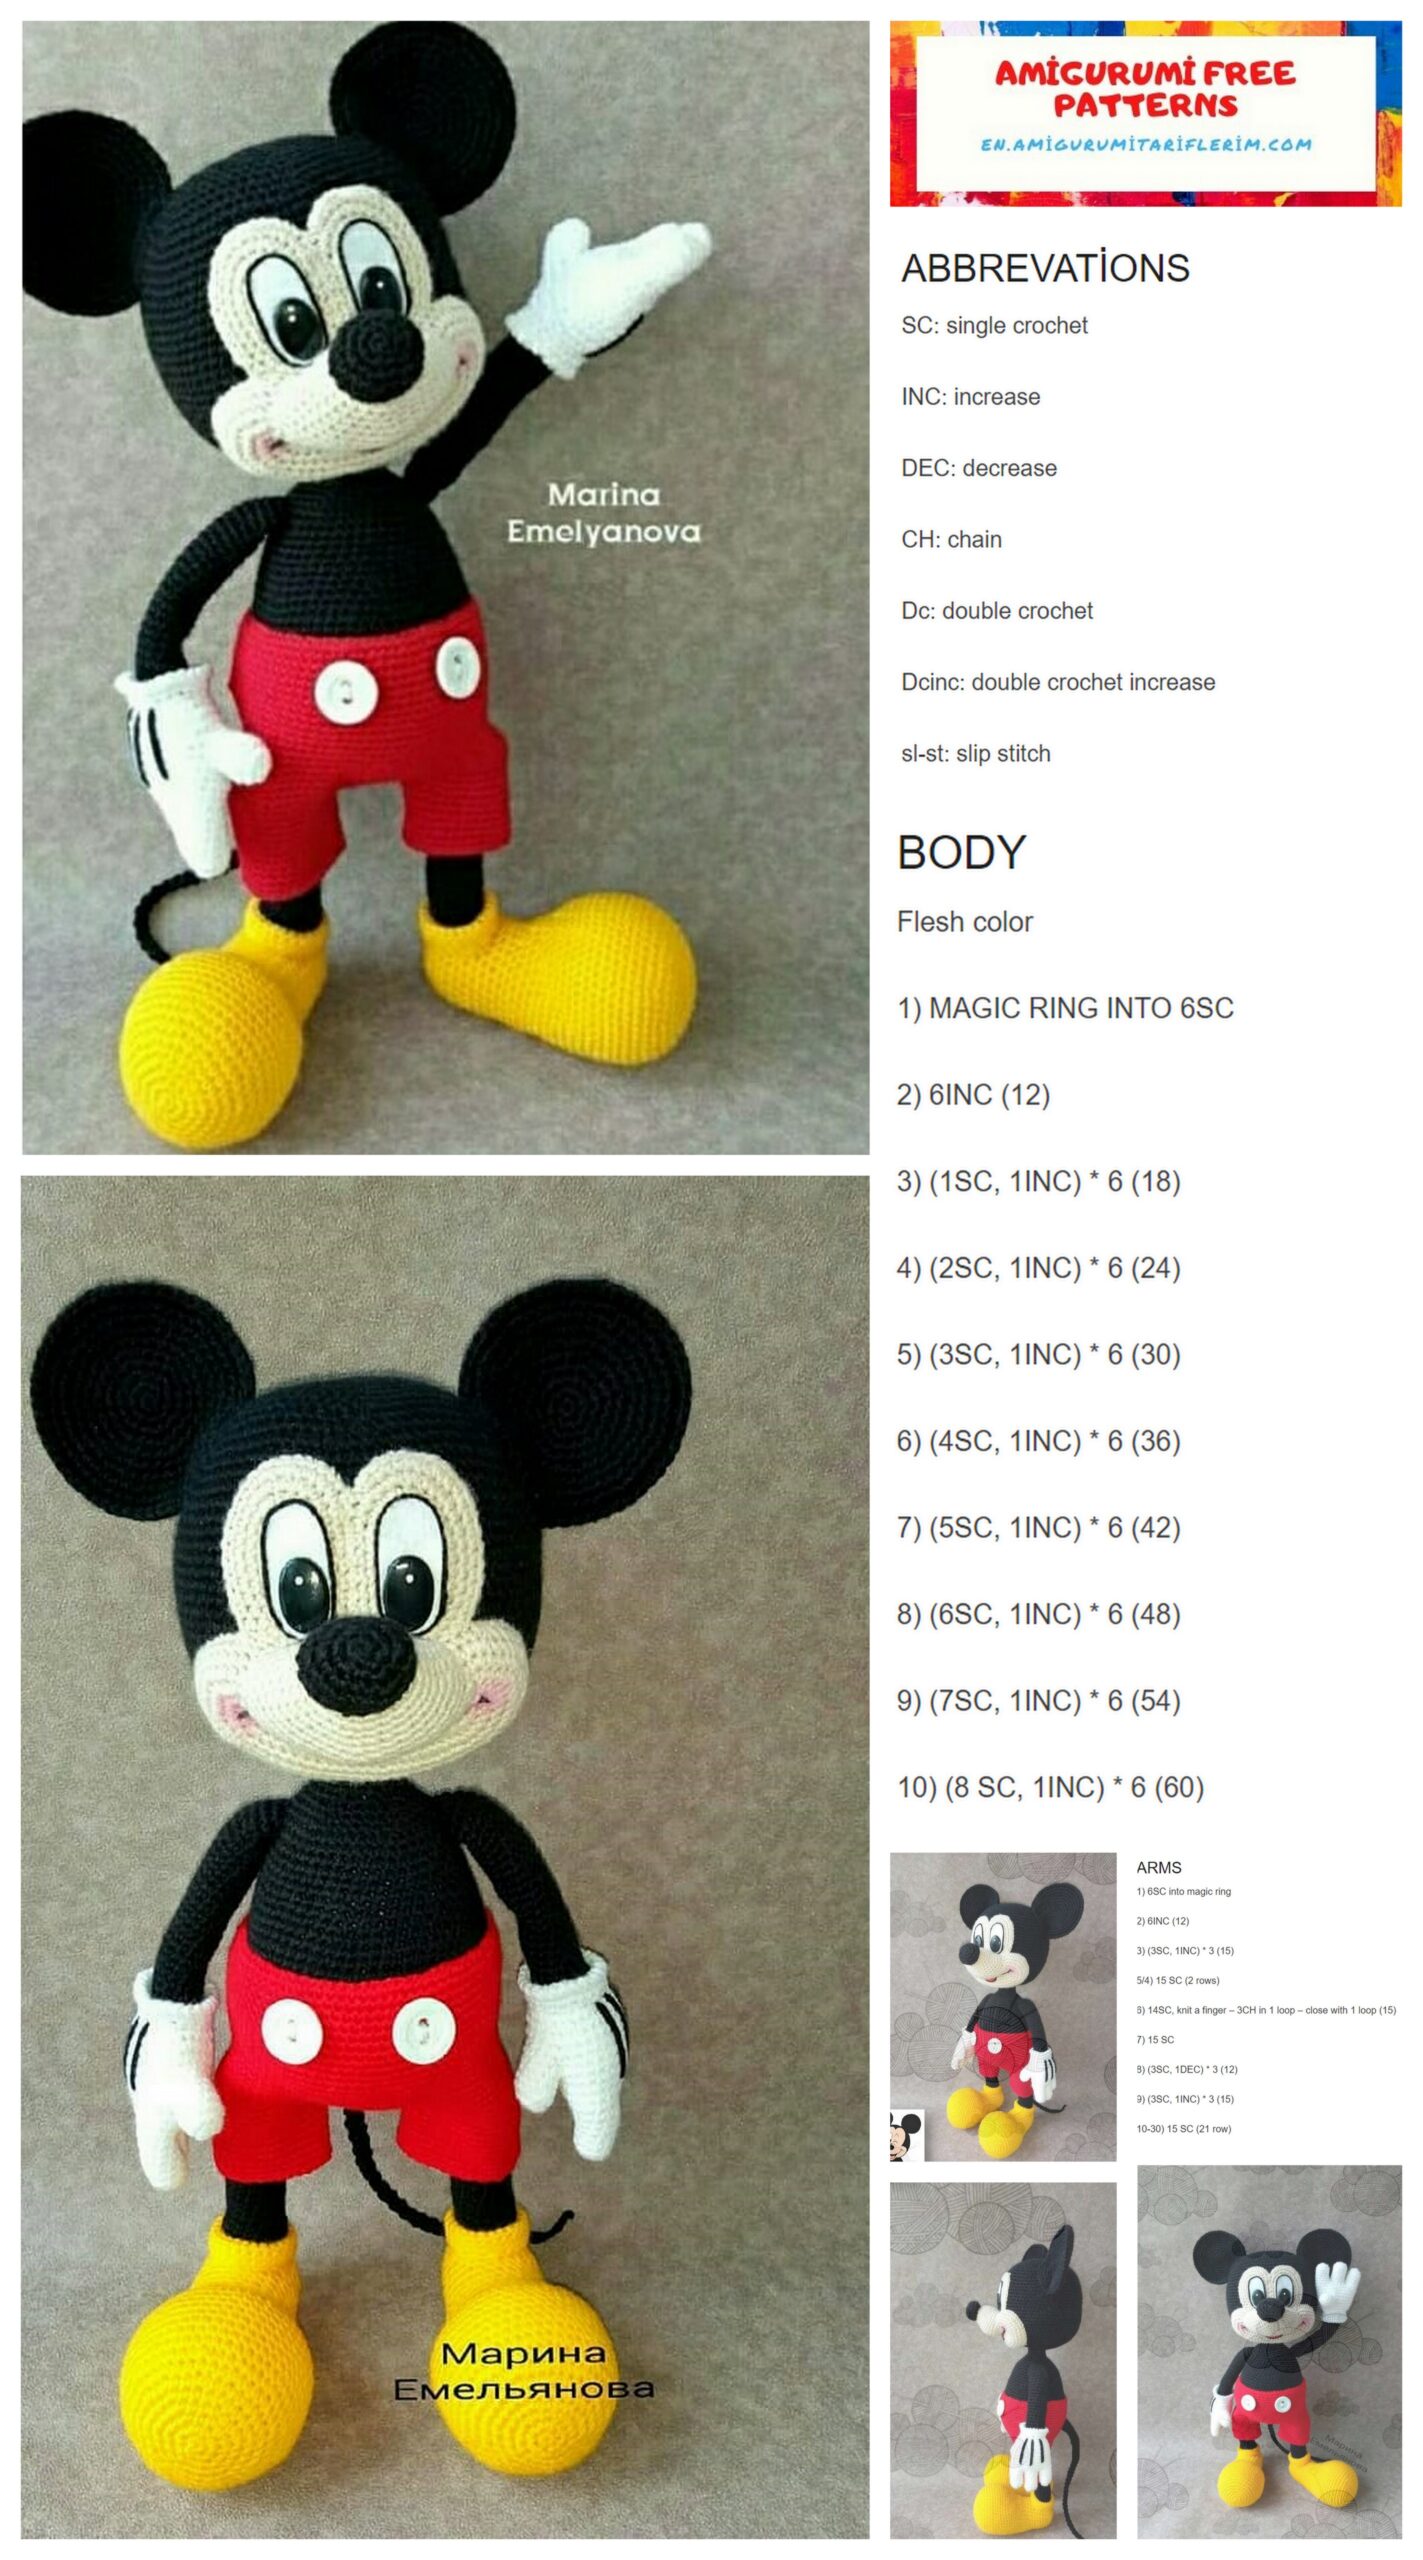 Mickey Mouse Amigurumi Free Pattern - En.amigurumitariflerim.com